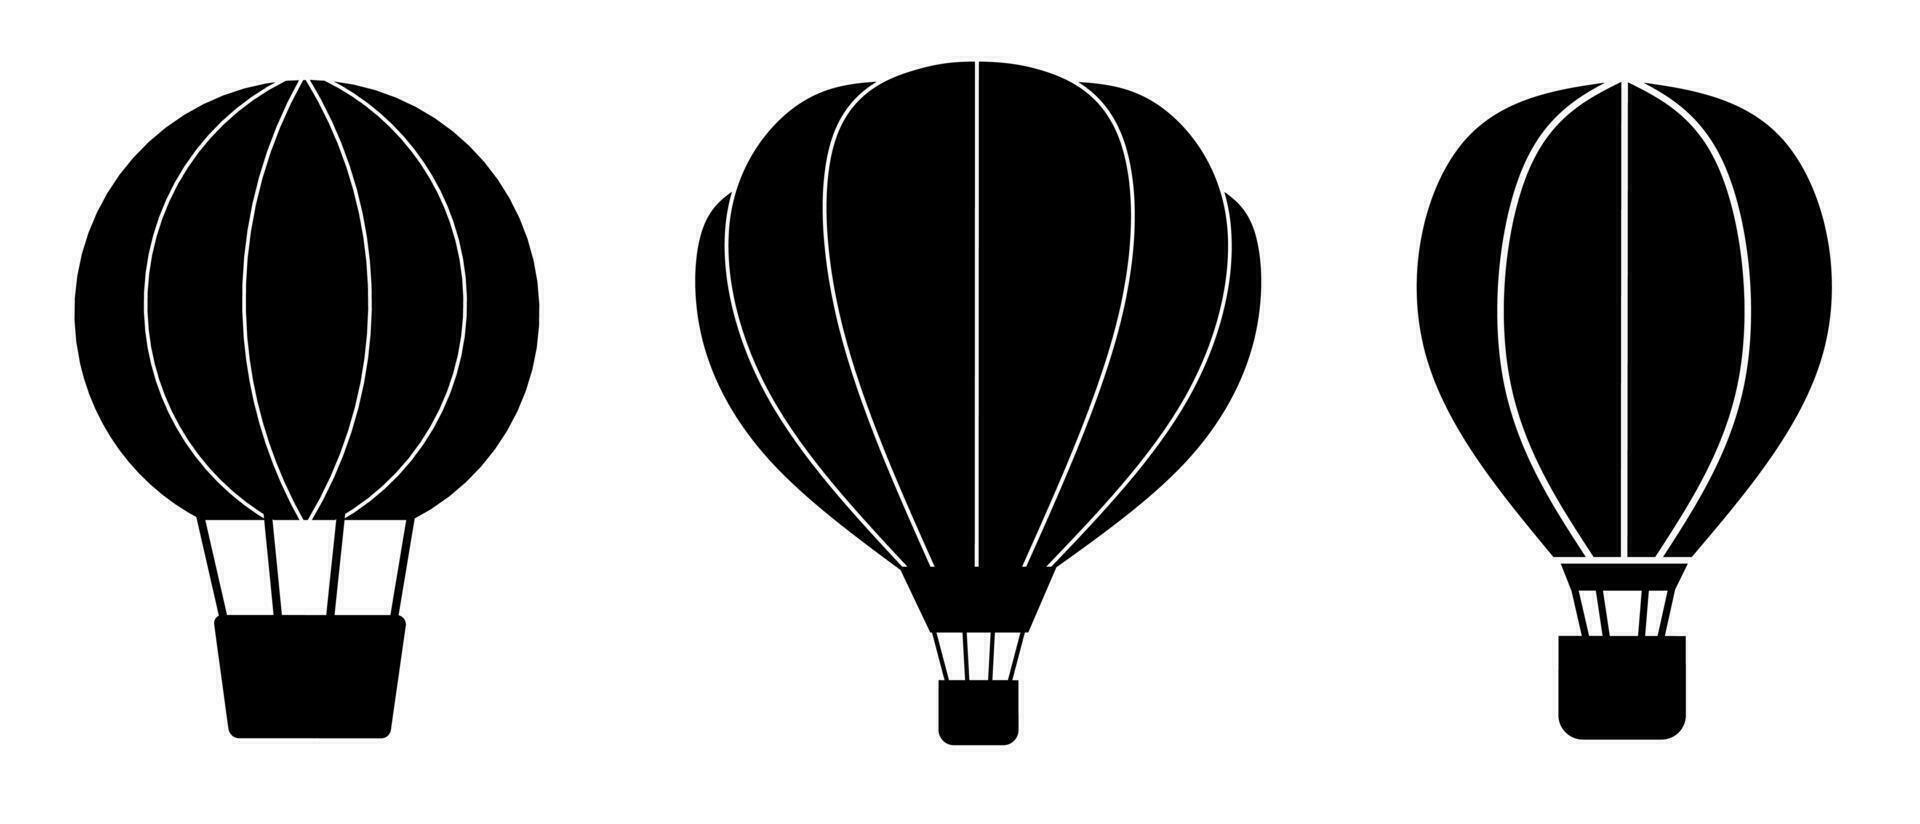 air ballon illustration ensemble. Stock vecteur collection.